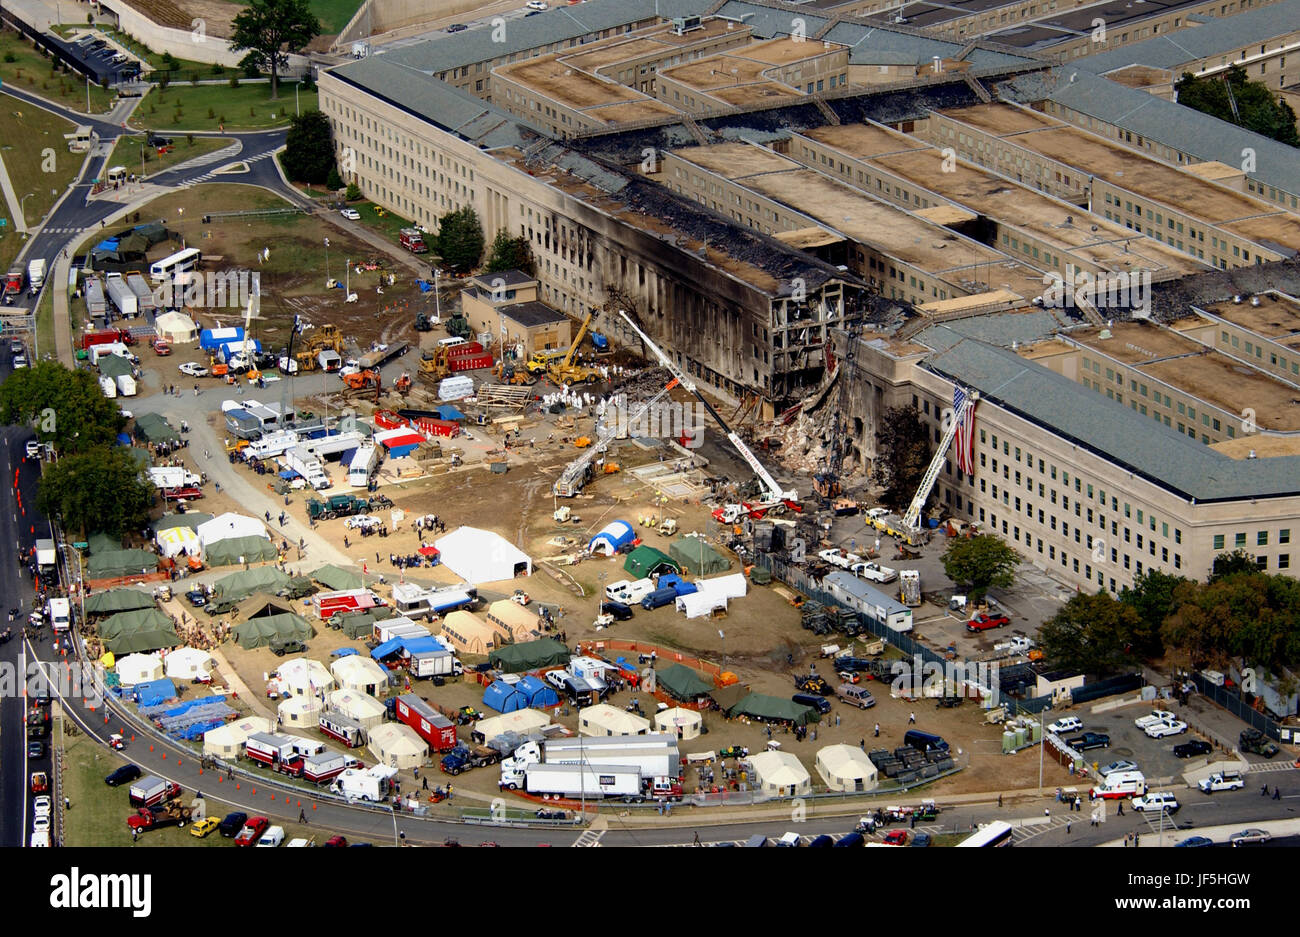 0 1 0 9 1 4 - F - 8 0 06 R - 005 agents du FBI, les pompiers, les sauveteurs et les ingénieurs travaillent au Pentagone de l'écrasement sur Septembre 14, 2001, où un haut-surélevé vol d'American Airlines s'écrasa contre l'immeuble le 11 septembre. L'attaque terroriste a causé des dommages considérables à la face ouest de l'édifice et suivie des attaques similaires sur les tours jumelles du World Trade Center à New York. DoD photo de Tech. Le Sgt. Cedric H. Rudisill. Banque D'Images